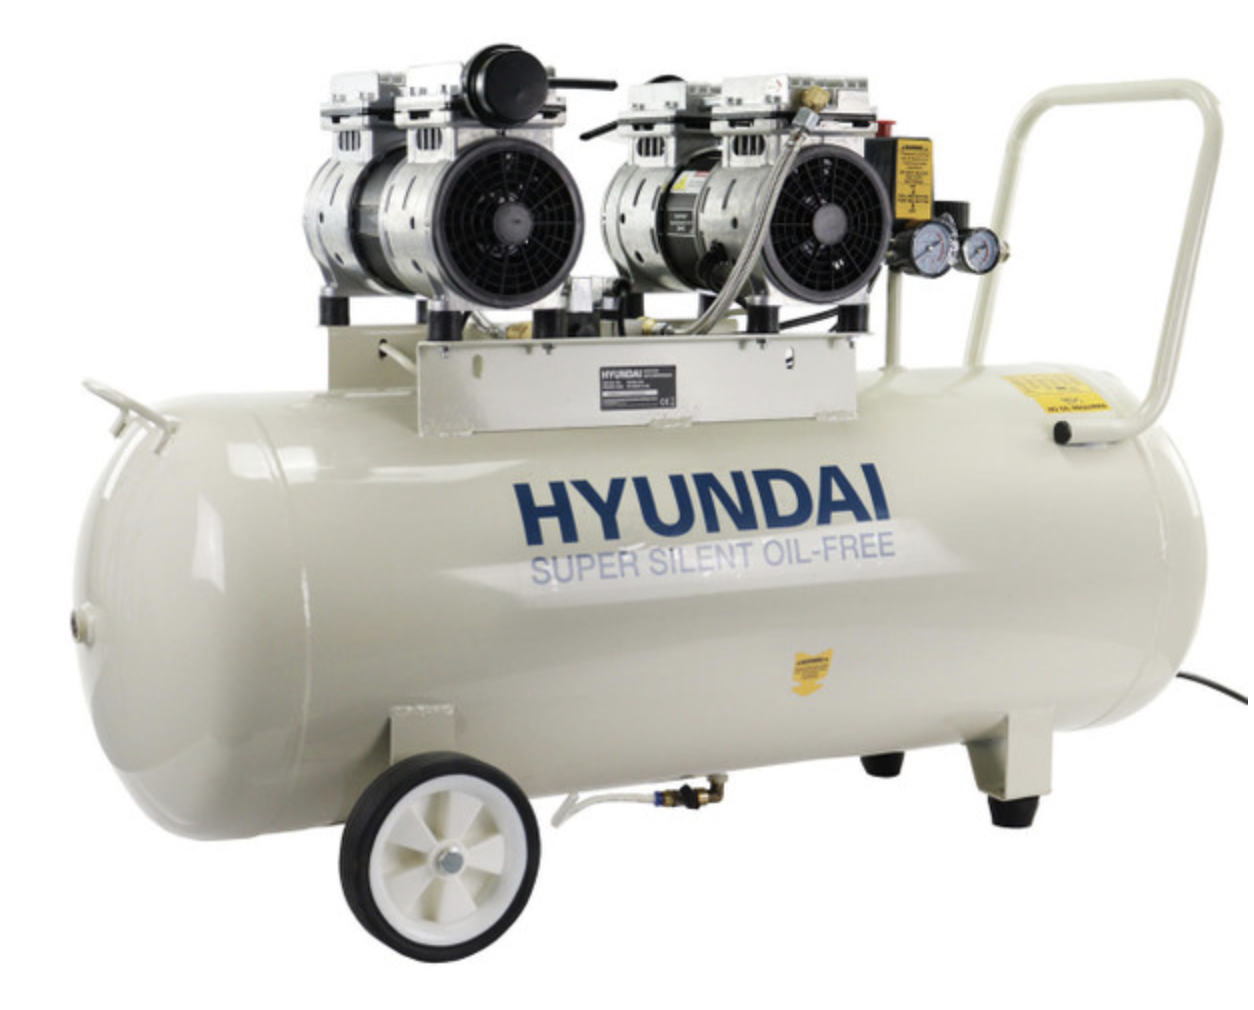 Hyundai 100 Litre Silenced Air Compressor 1500W Electric Oil-free 2hp 